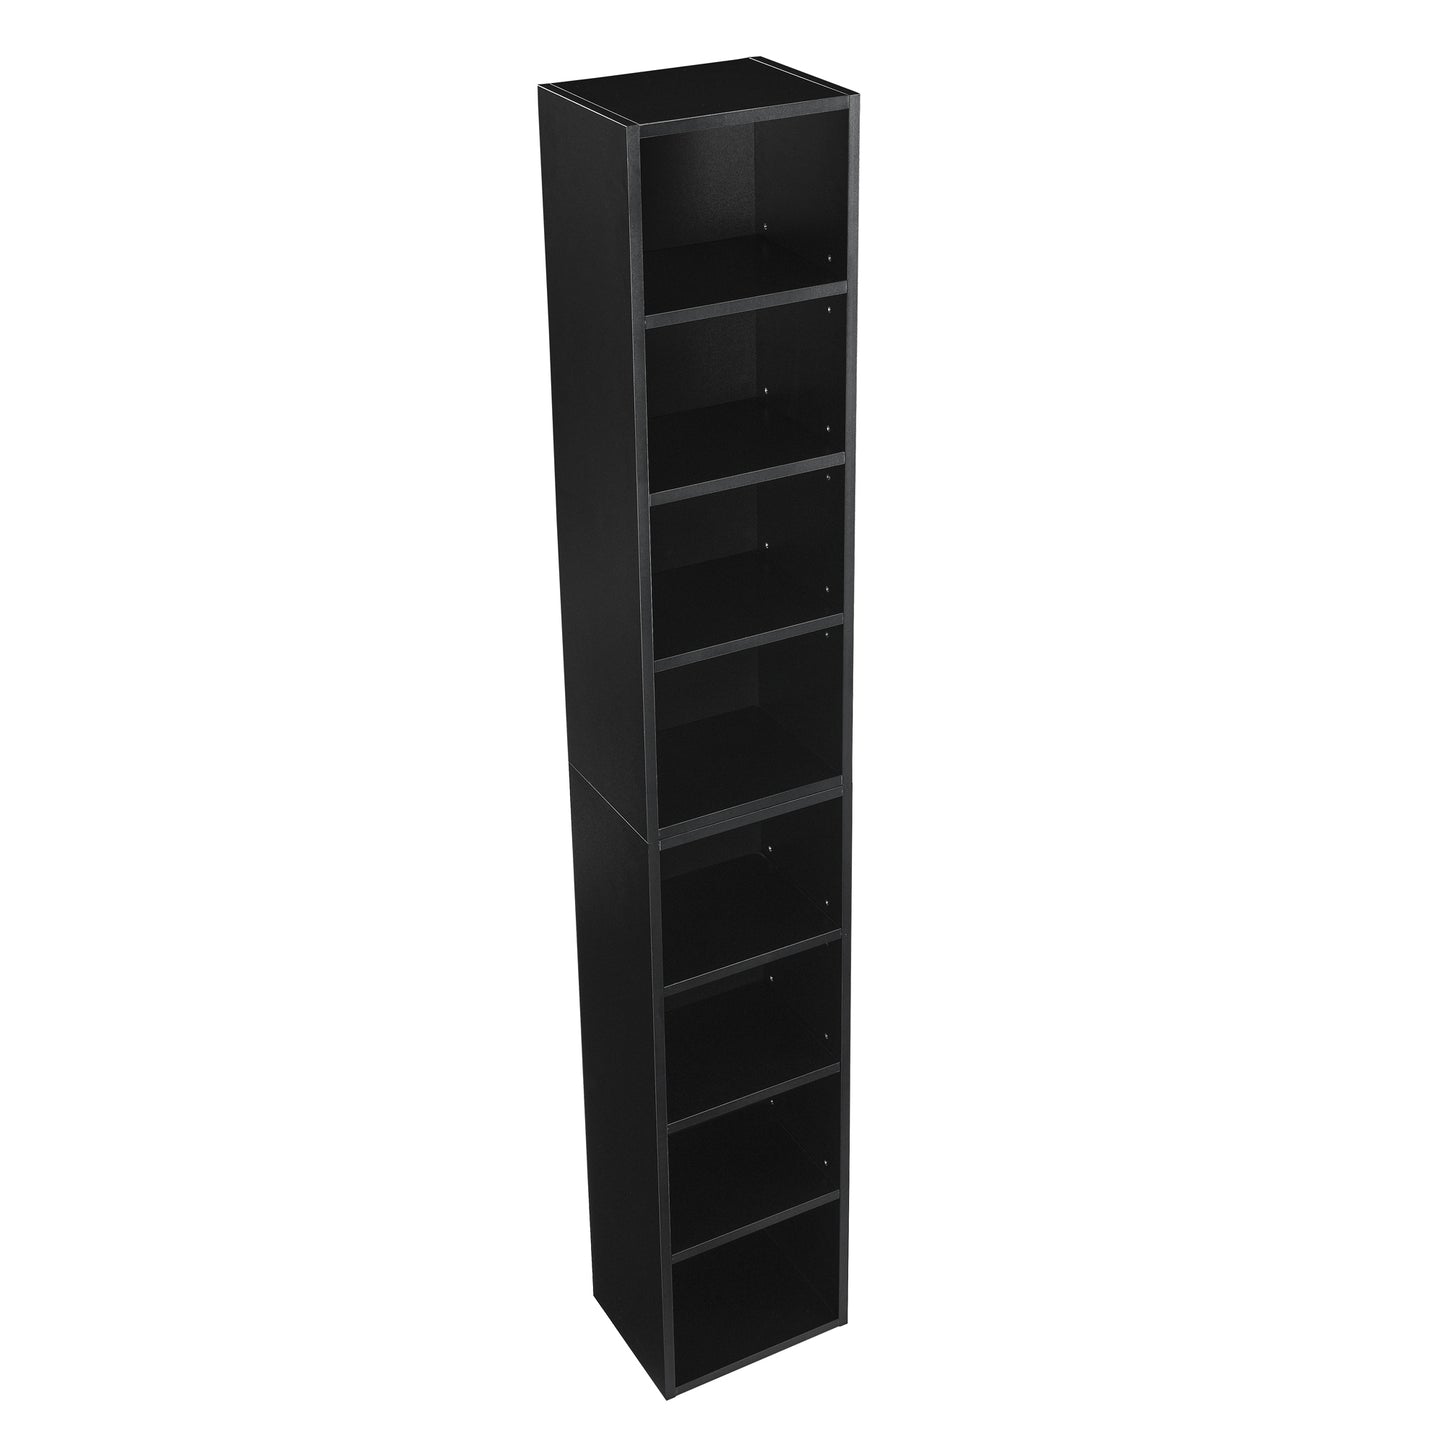 8-Tier CD/DVD Slim Storage Cabinet With Adjustable Shelves - Ukerr Home